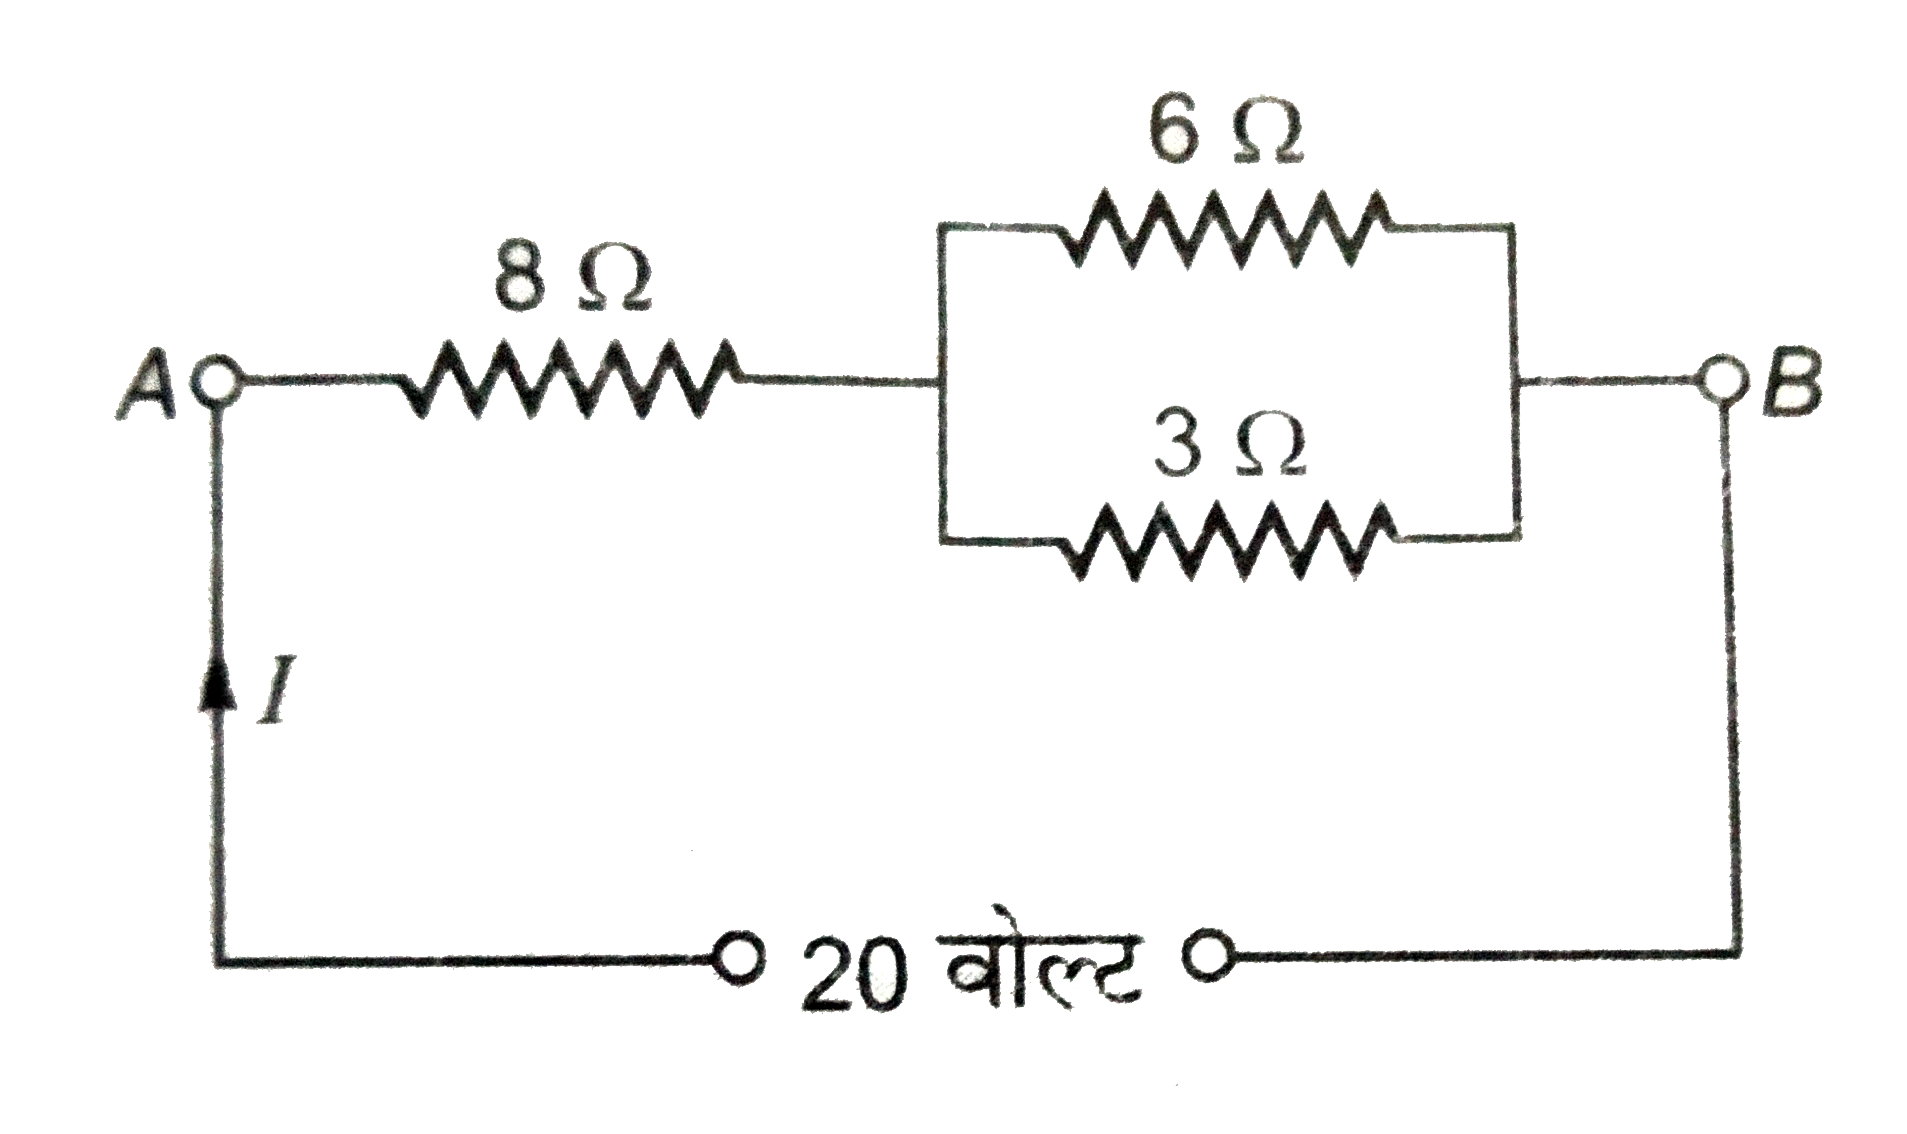 संलग्न चित्र में बिंदु A व B के बीच तुल्य प्रतिरोध तथा स्रोत द्वारा प्रवाहित धारा ज्ञात कीजिये ।